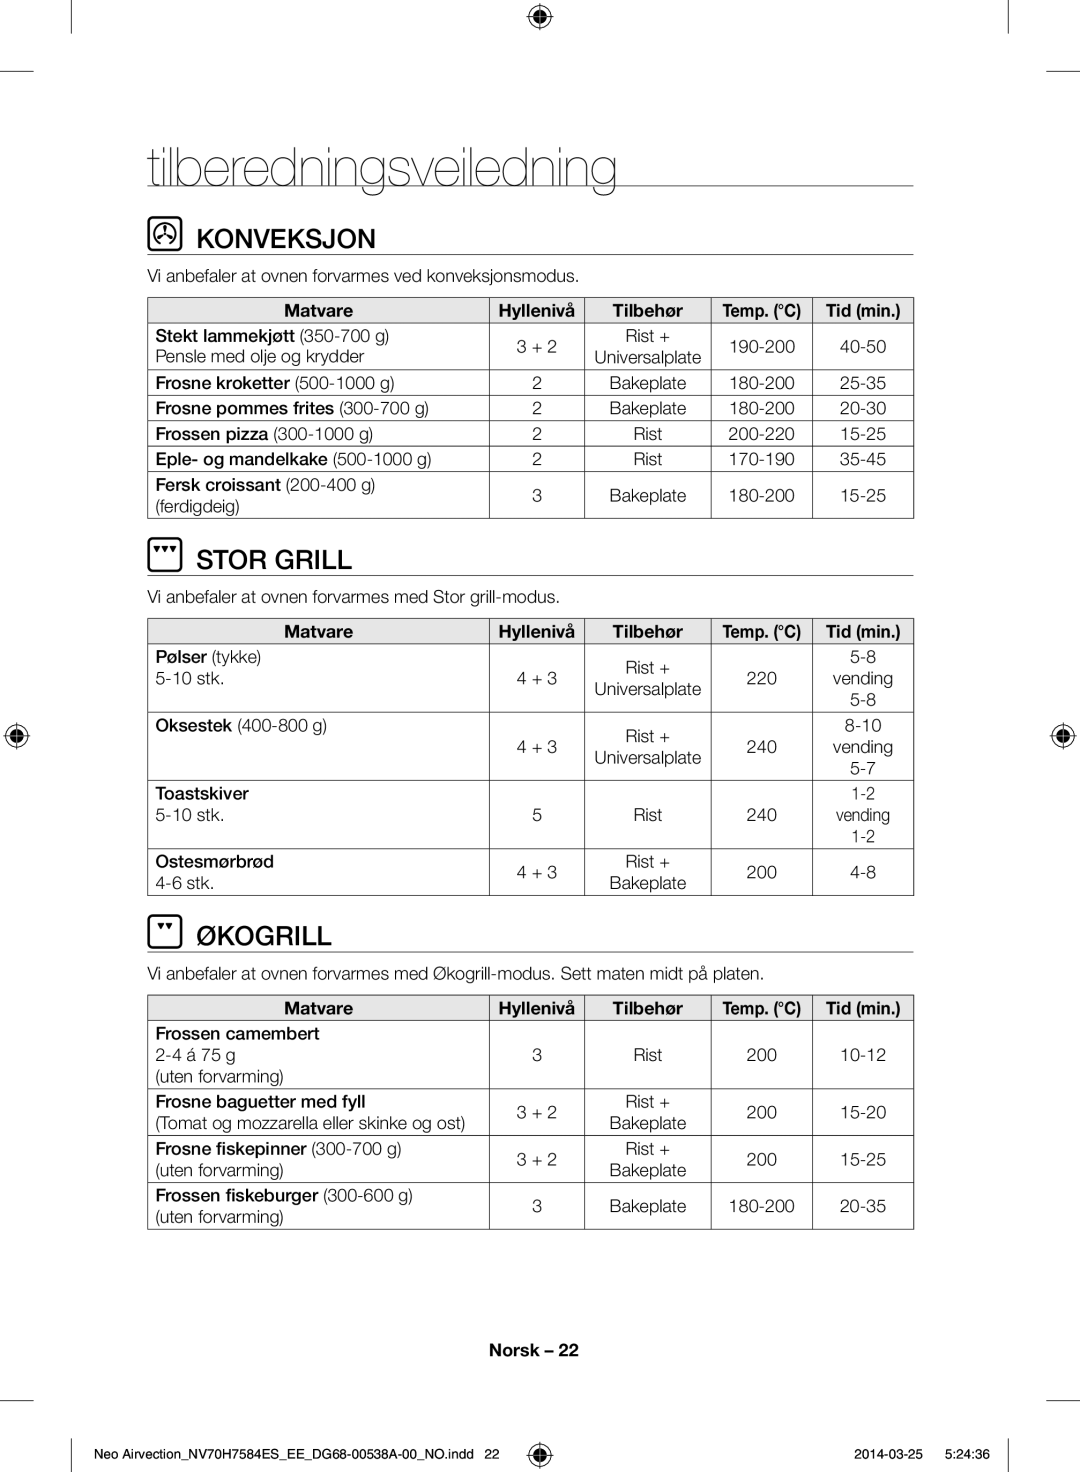 Samsung NV70H7584ES/EE manual Tilberedningsveiledning, Konveksjon, Økogrill, Matvare Hyllenivå Tilbehør, Tid min 